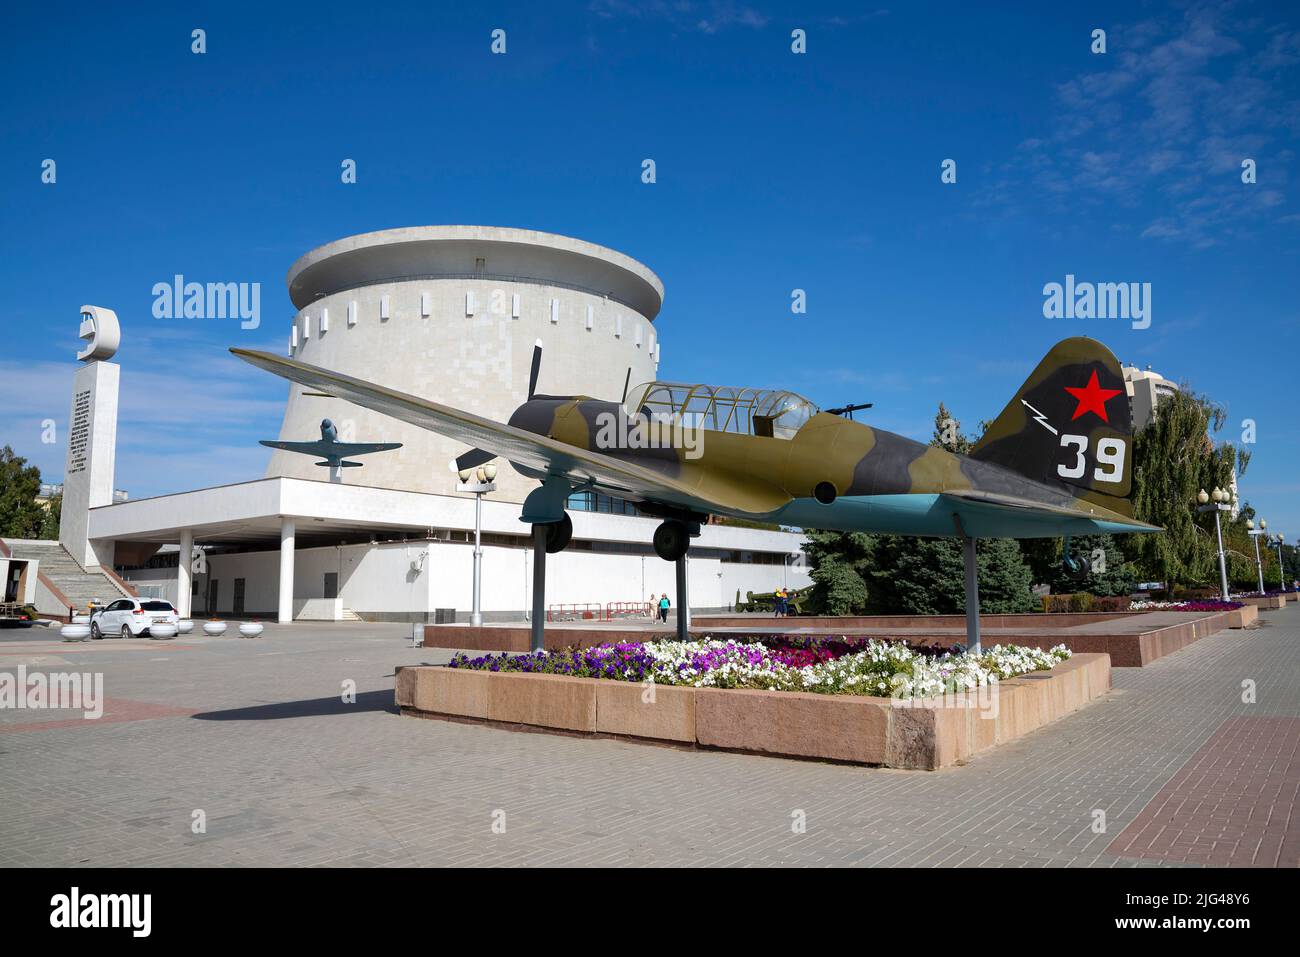 VOLGOGRAD, RUSSIE - 19 SEPTEMBRE 2021 : maquette de l'avion SU-2 (BB-1) au musée panoramique 'Battle of Stalingrad'. Volgograd, Russie Banque D'Images